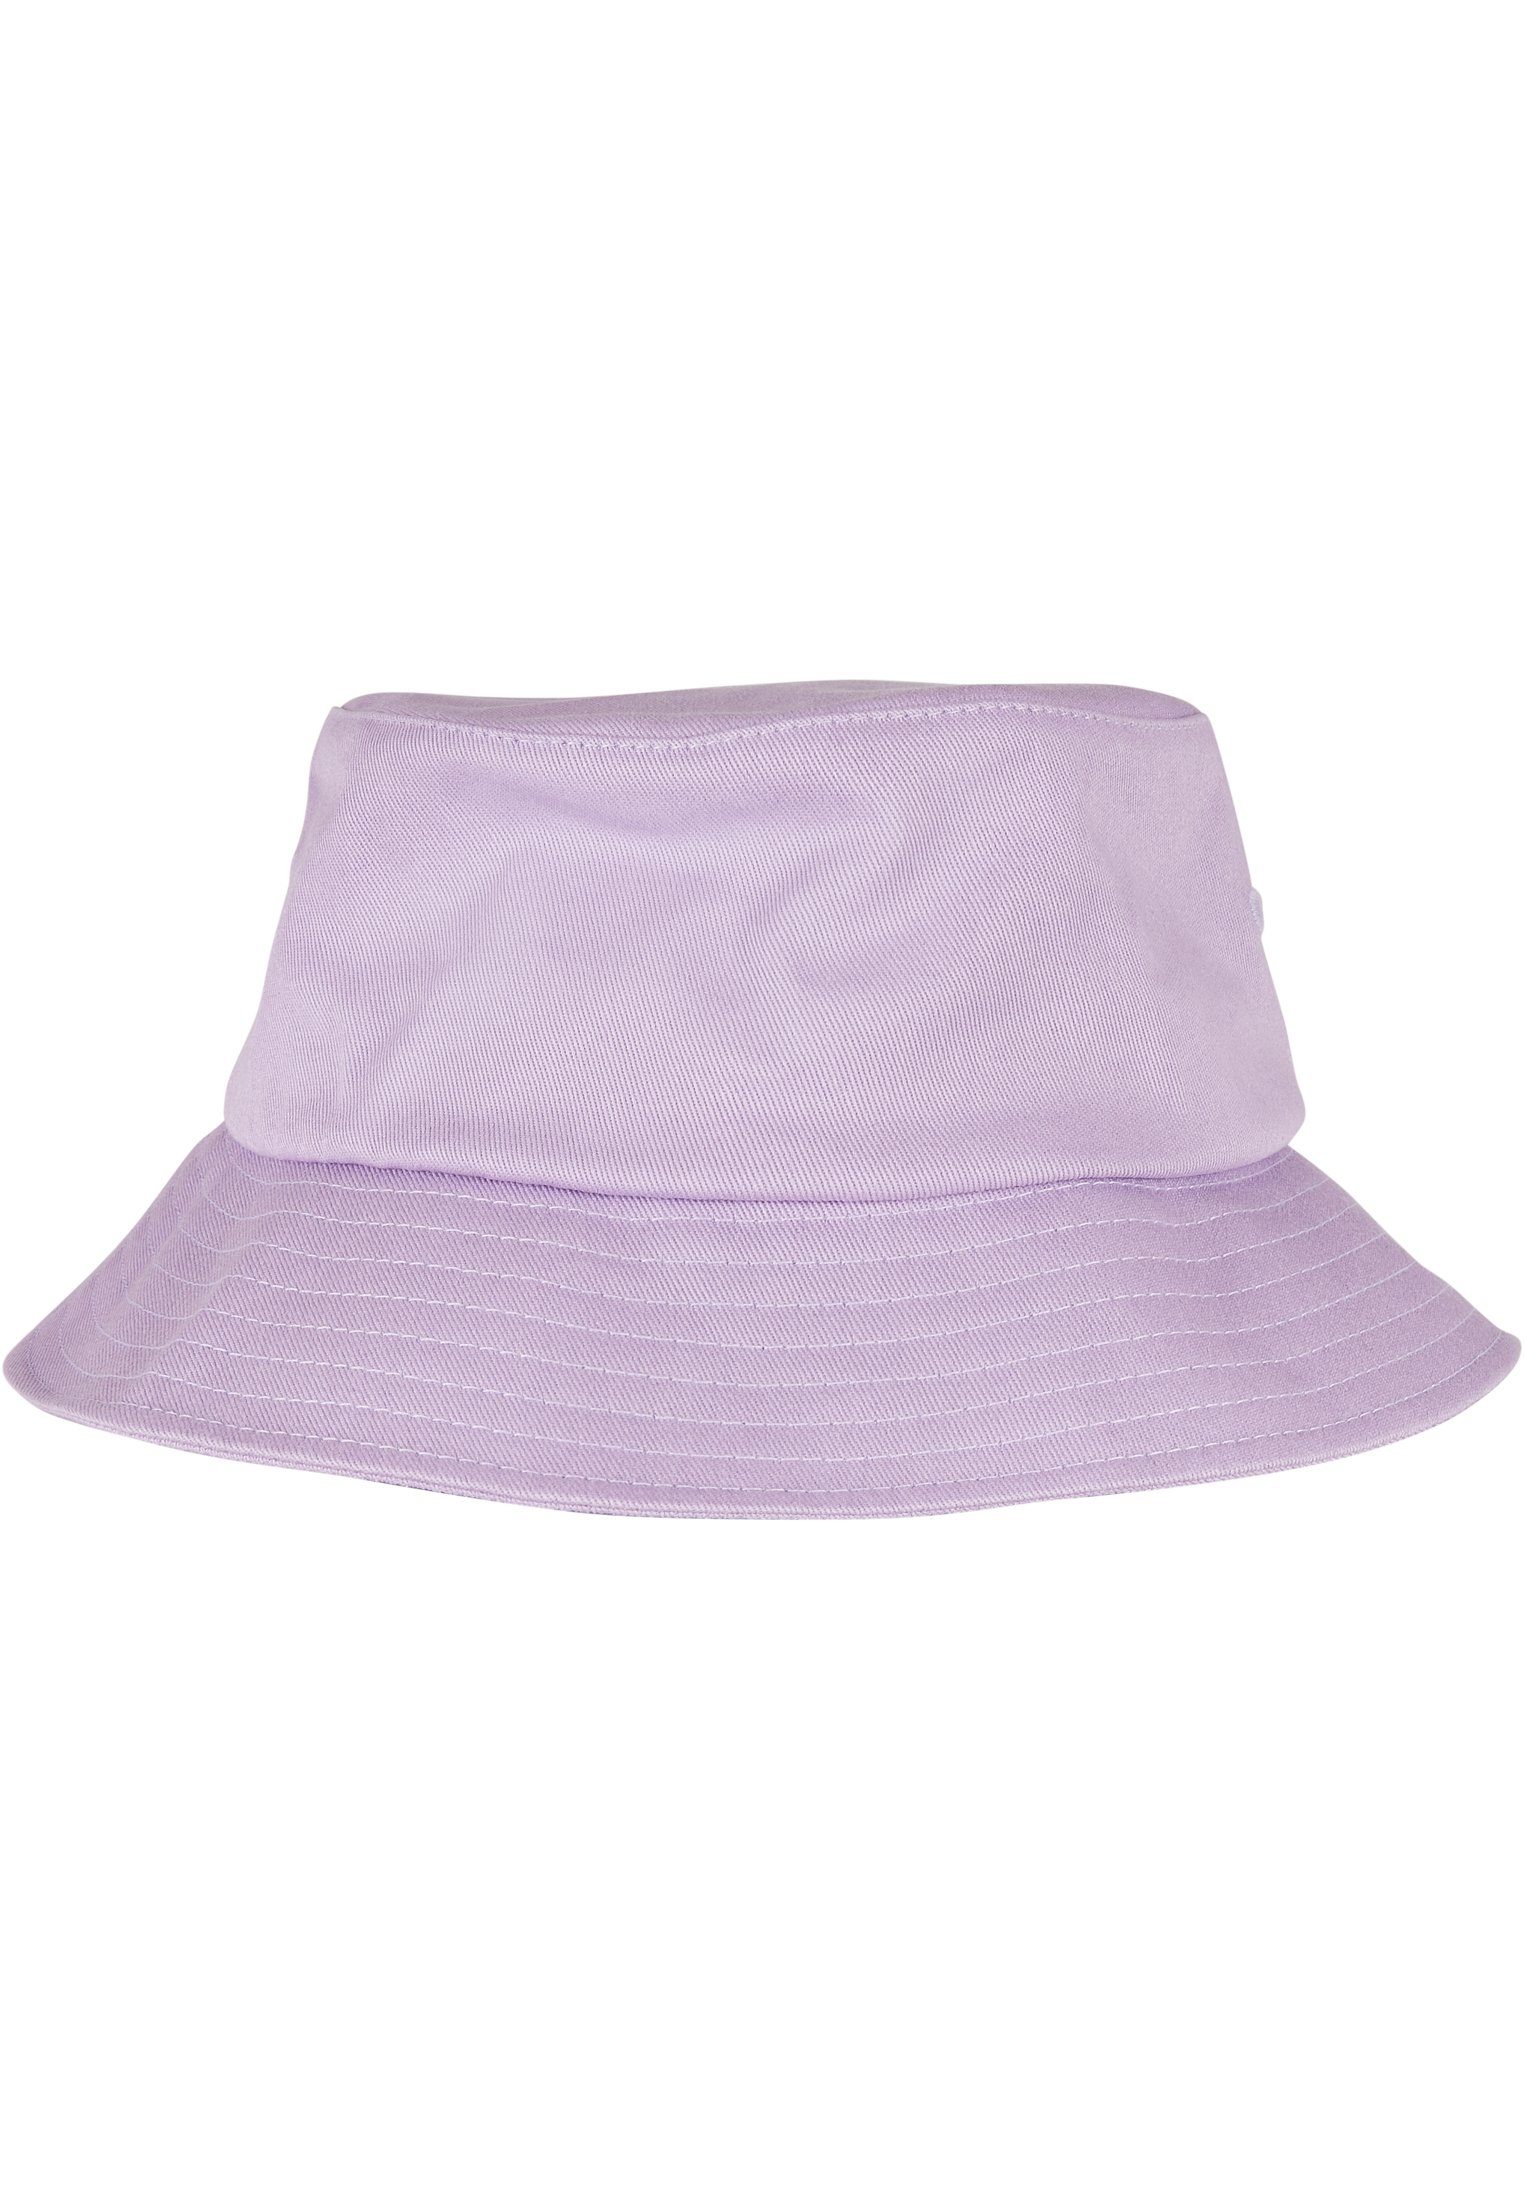 Cotton Hat Flex Flexfit Bucket Accessoires lilac Cap Flexfit Twill